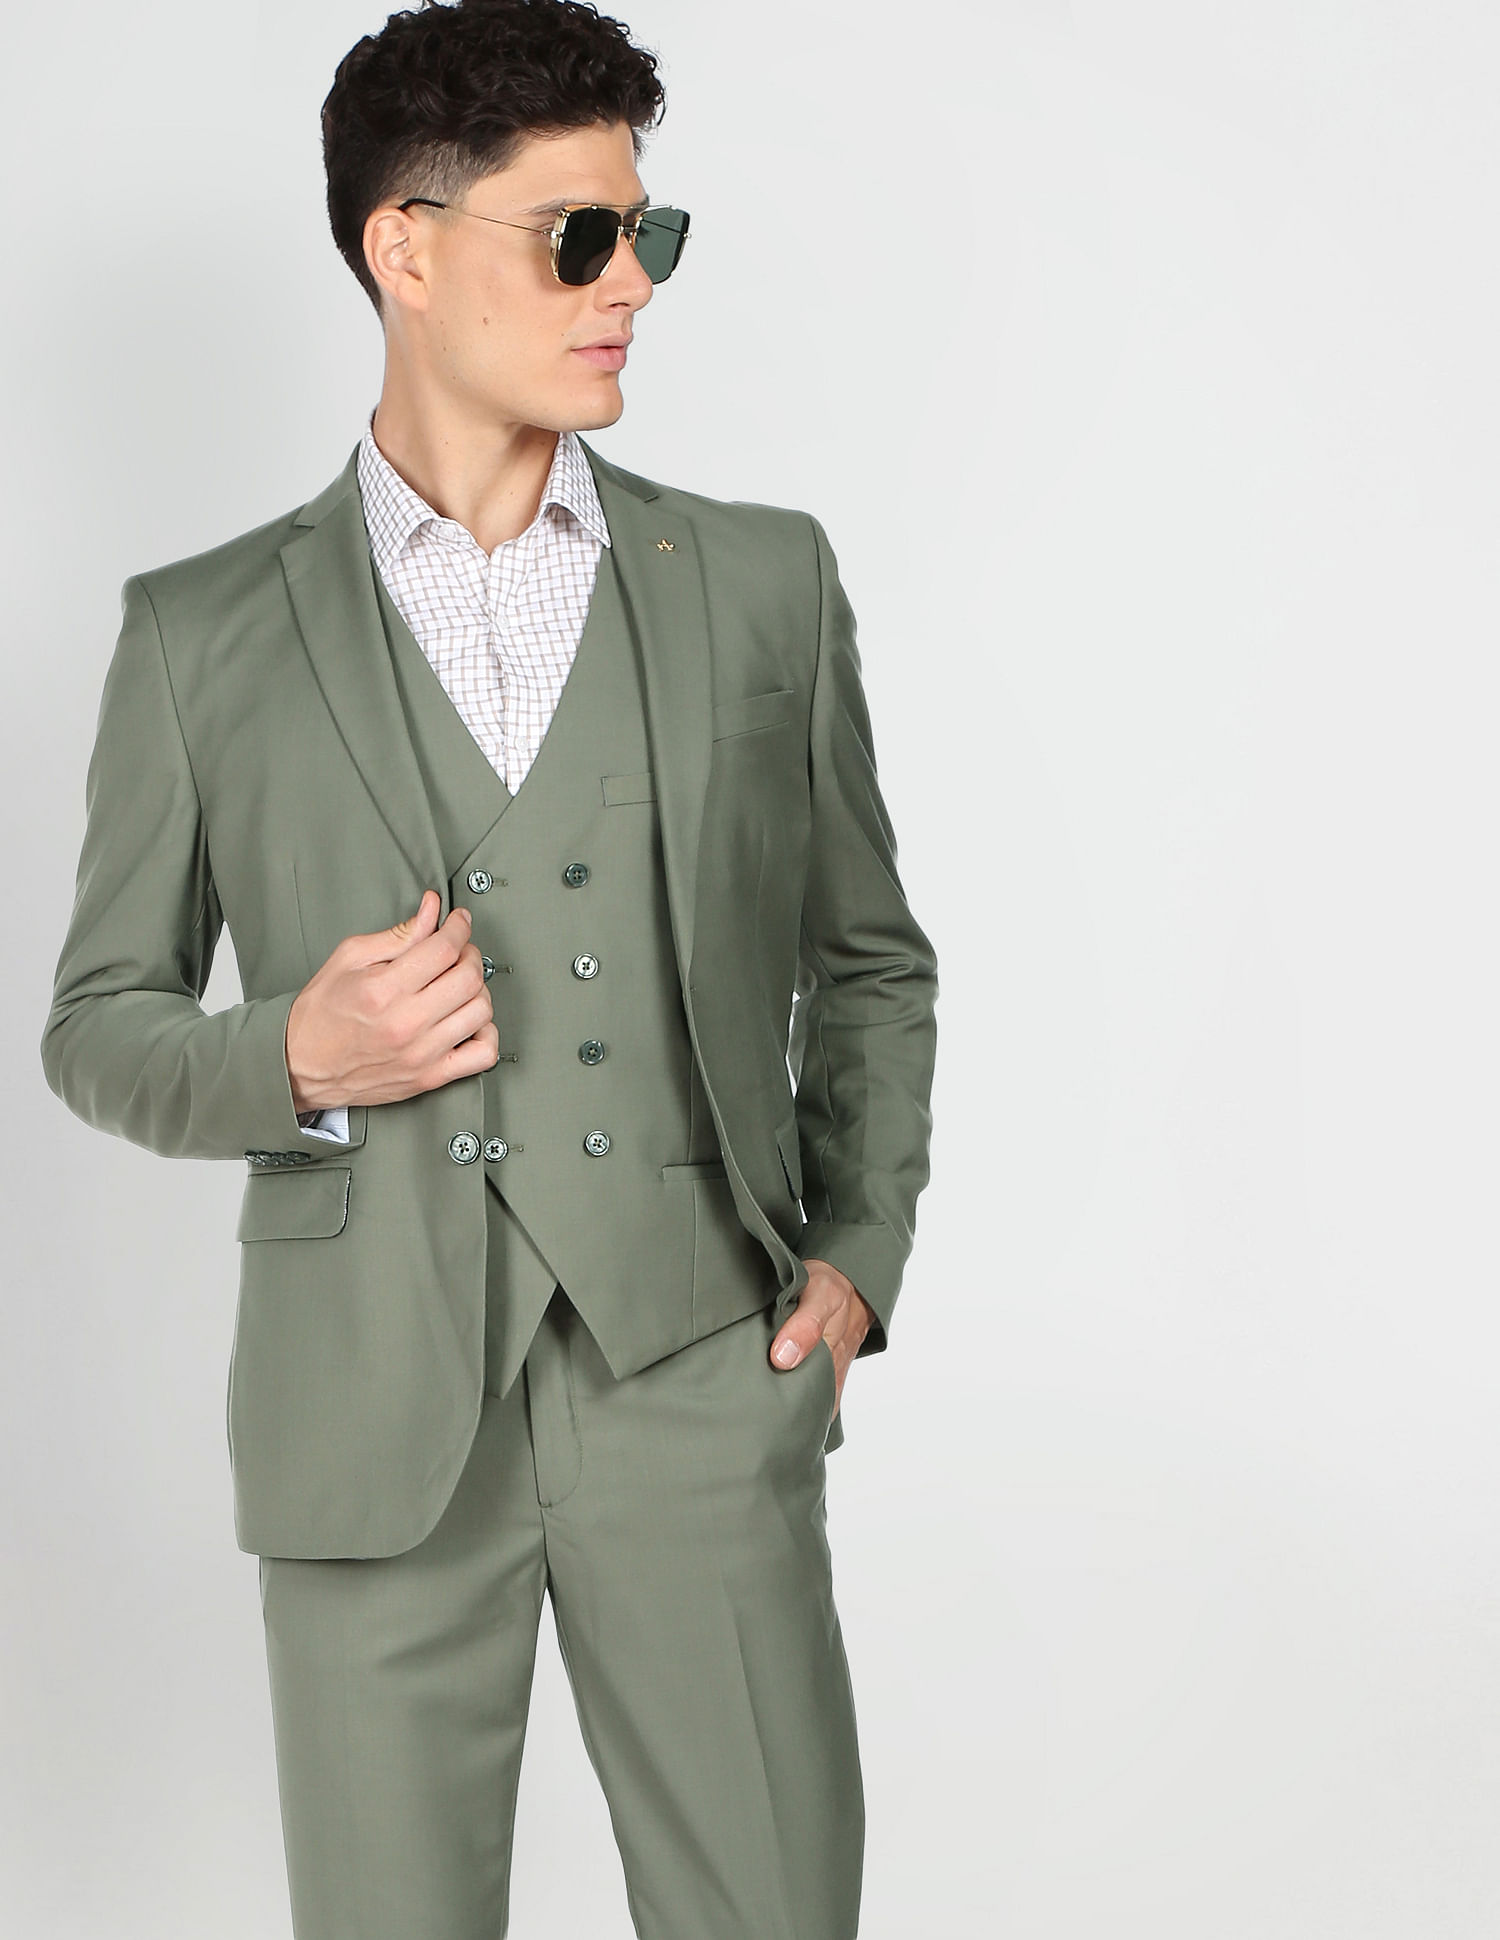 Navy Pinstripe tweed suit 3 Piece Suit | BDtailormade